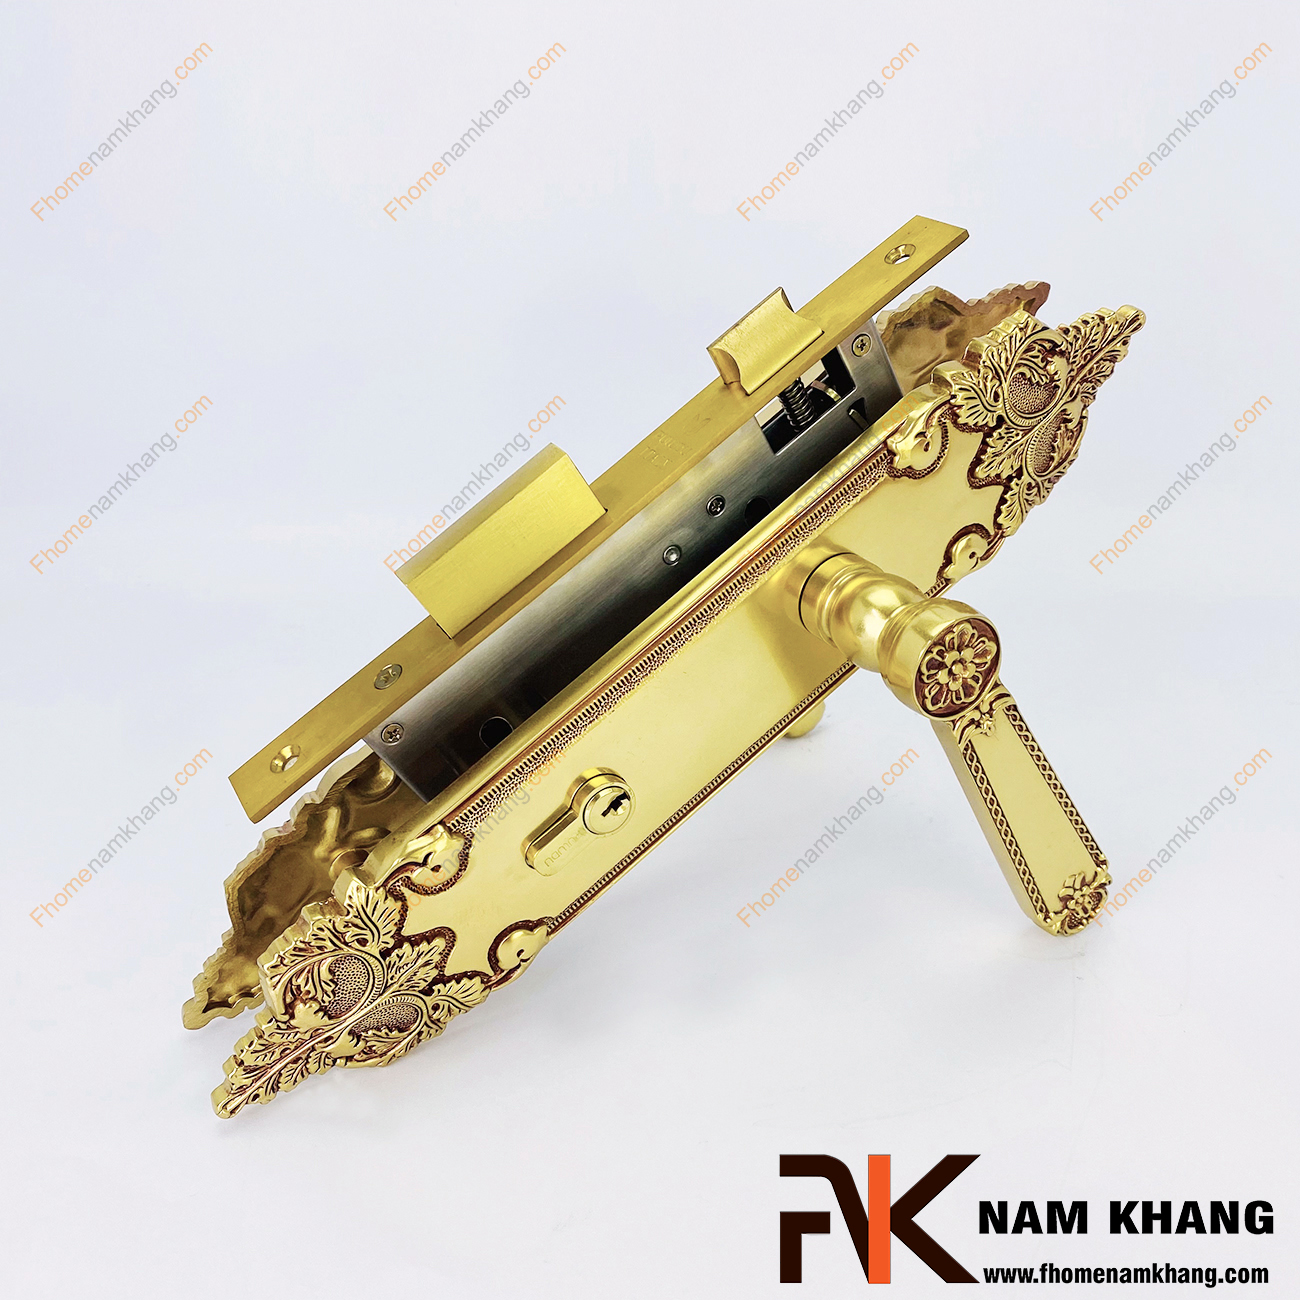 Khóa cửa chính từ chất liệu đồng vàng cao cấp NK347L-RC là bộ khóa cửa dành chuyên các dạng cửa chính lớn, cao cấp, cửa 2 cánh hoặc 4 cánh bằng gỗ hoặc các chất liệu khác